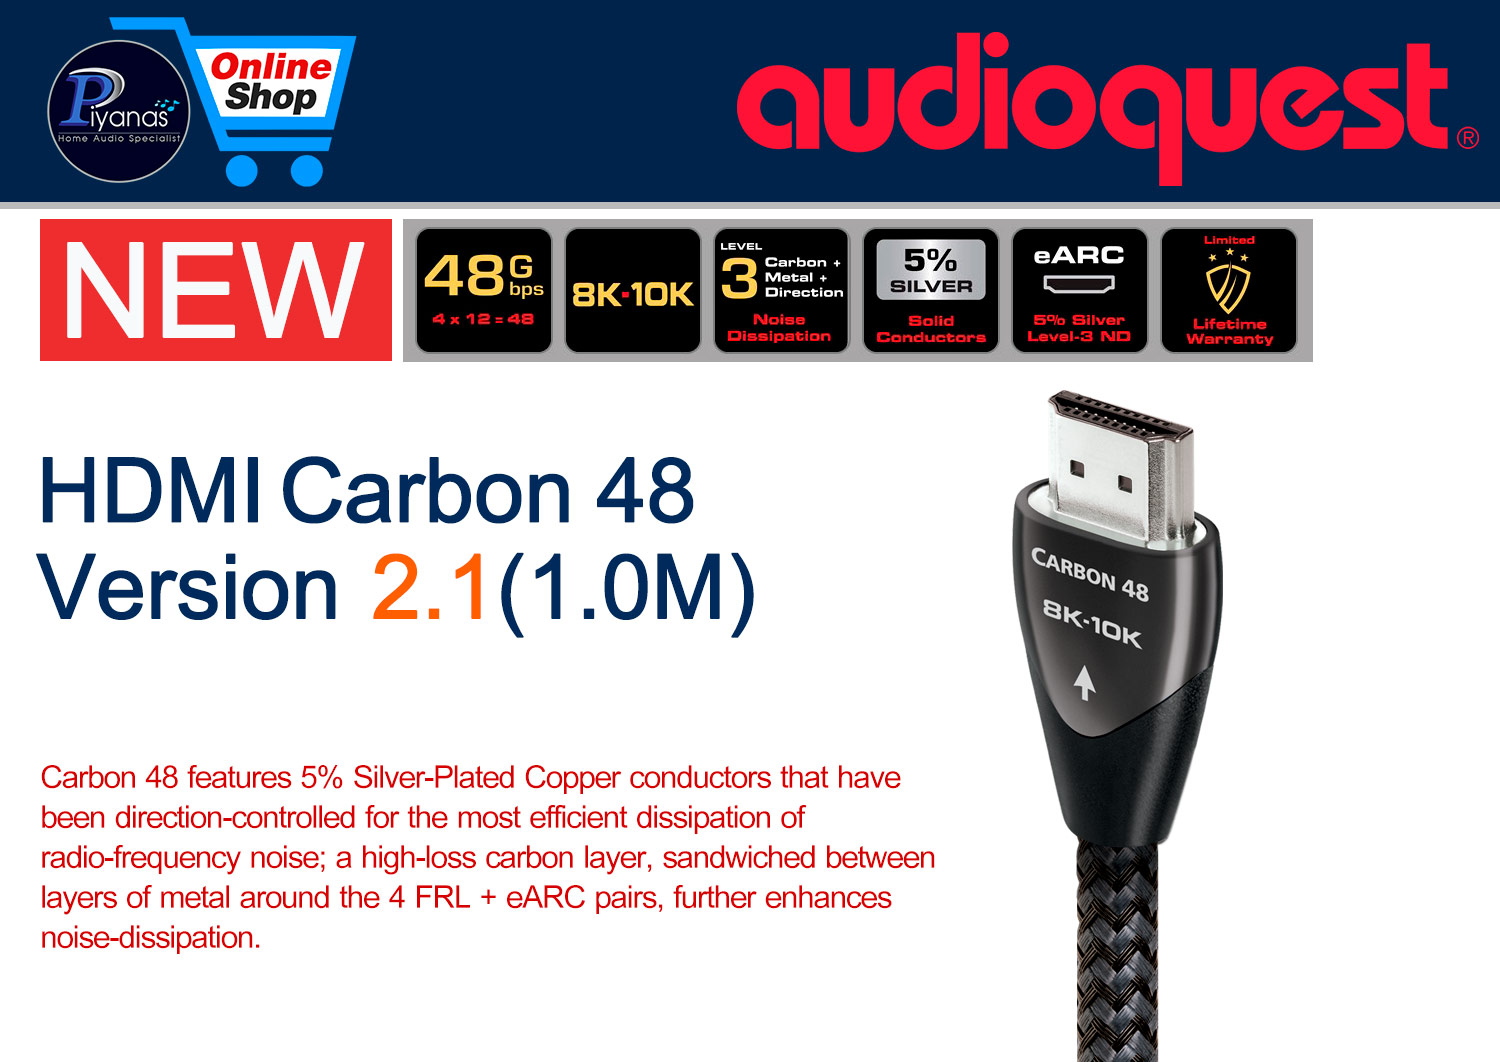 HDMI-Carbon 48 Version 2.1 (1.0M)